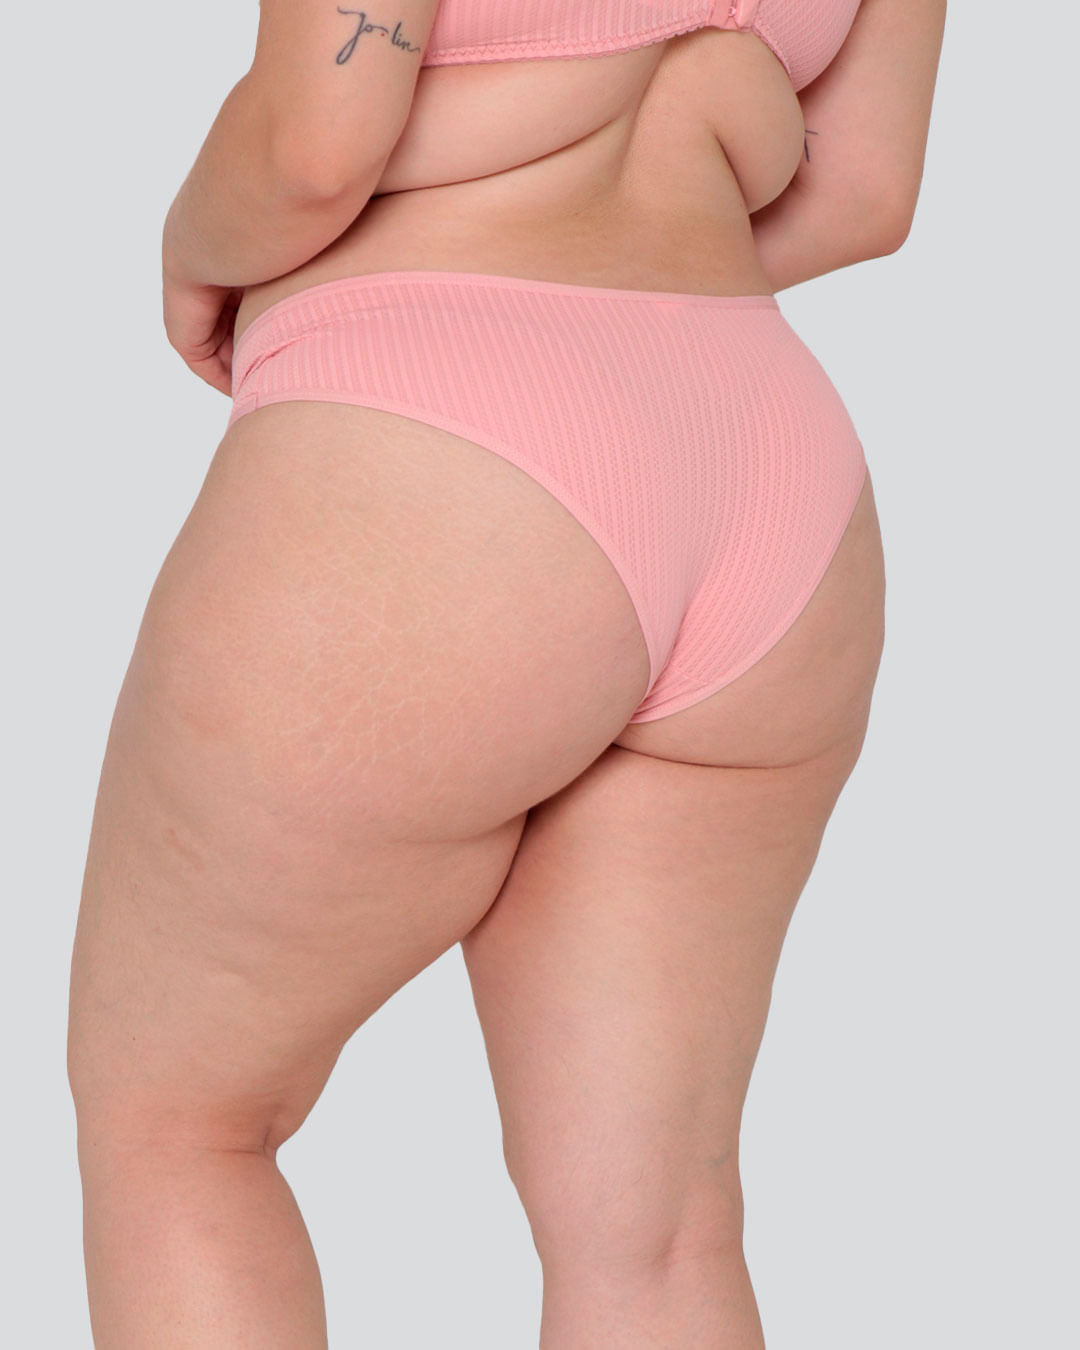 Calcinha Biquíni Plus Size Trançada Folhagem Pink - Bambina